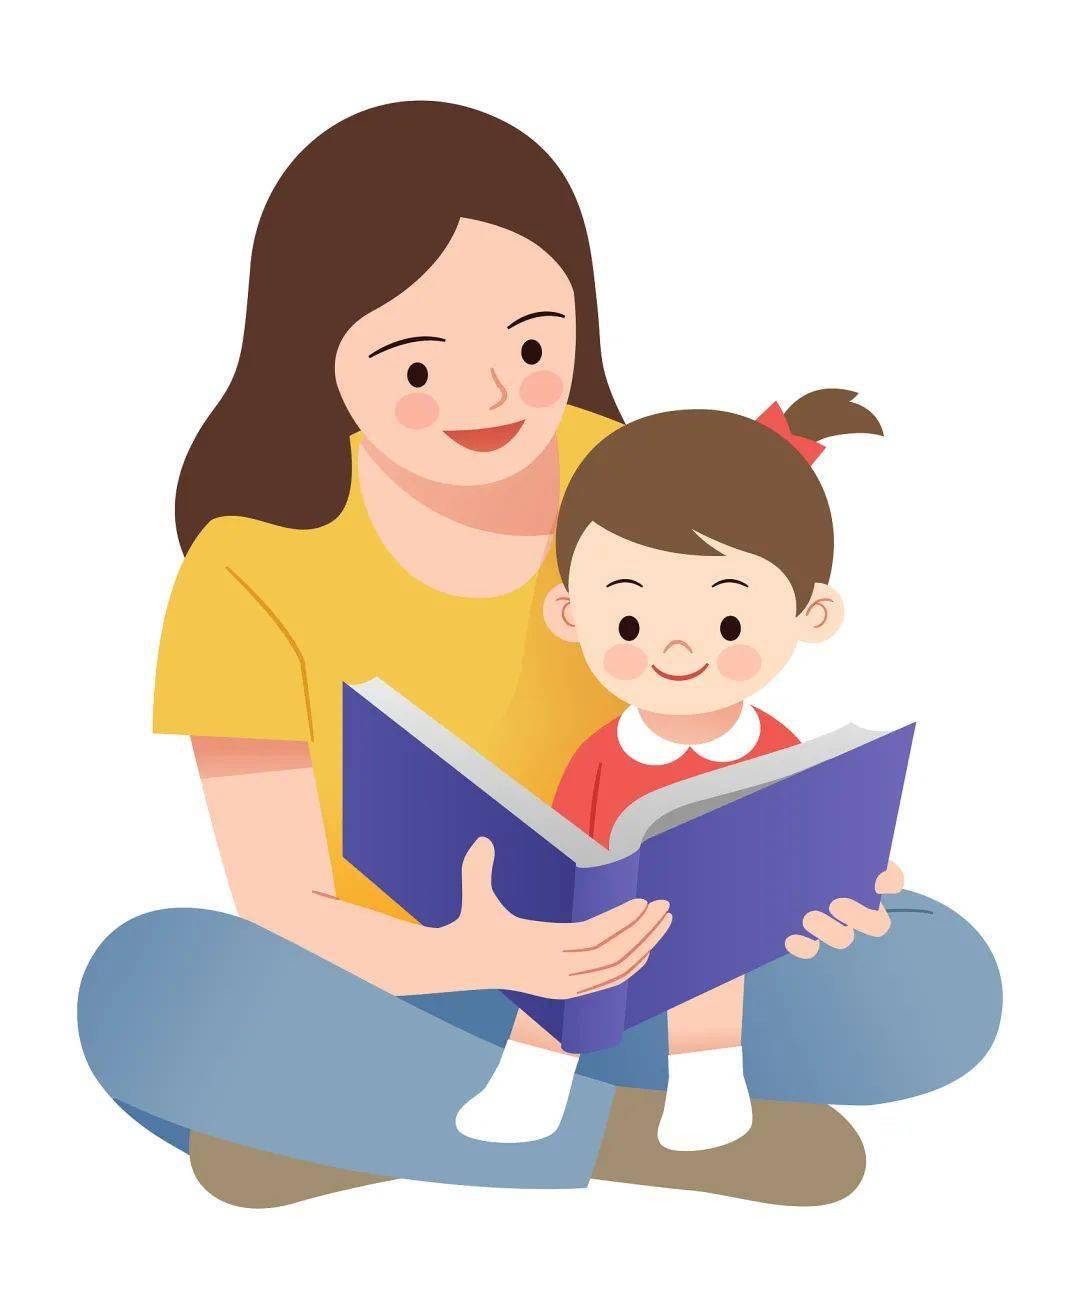 叮咚 超实用的亲子阅读小技巧,让宝宝爱上阅读 七巧板育儿堂